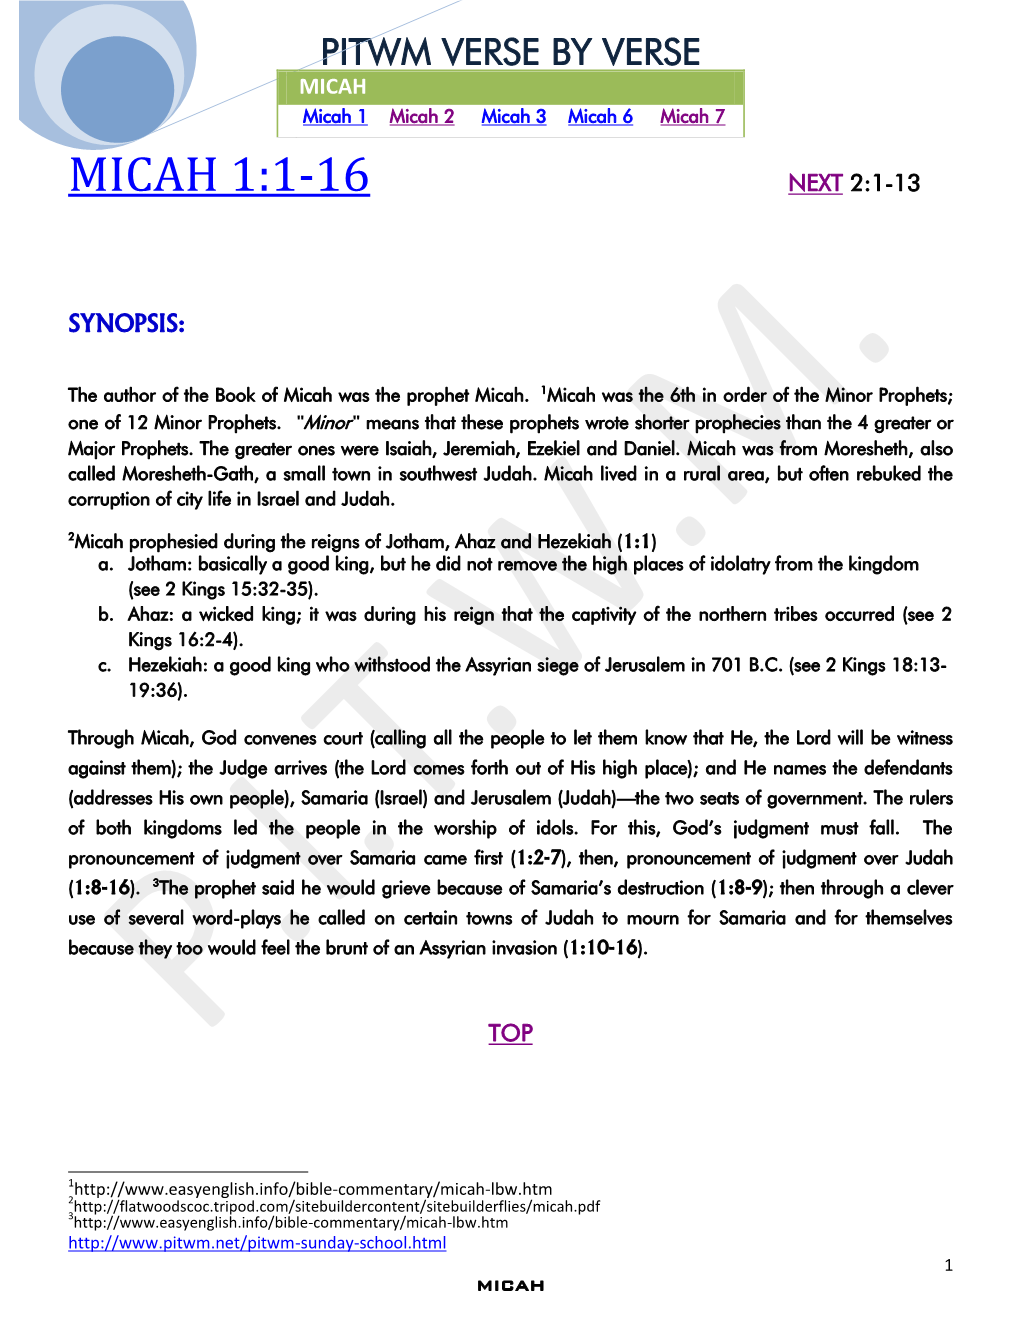 Micah 1:1-16 Next 2:1-13